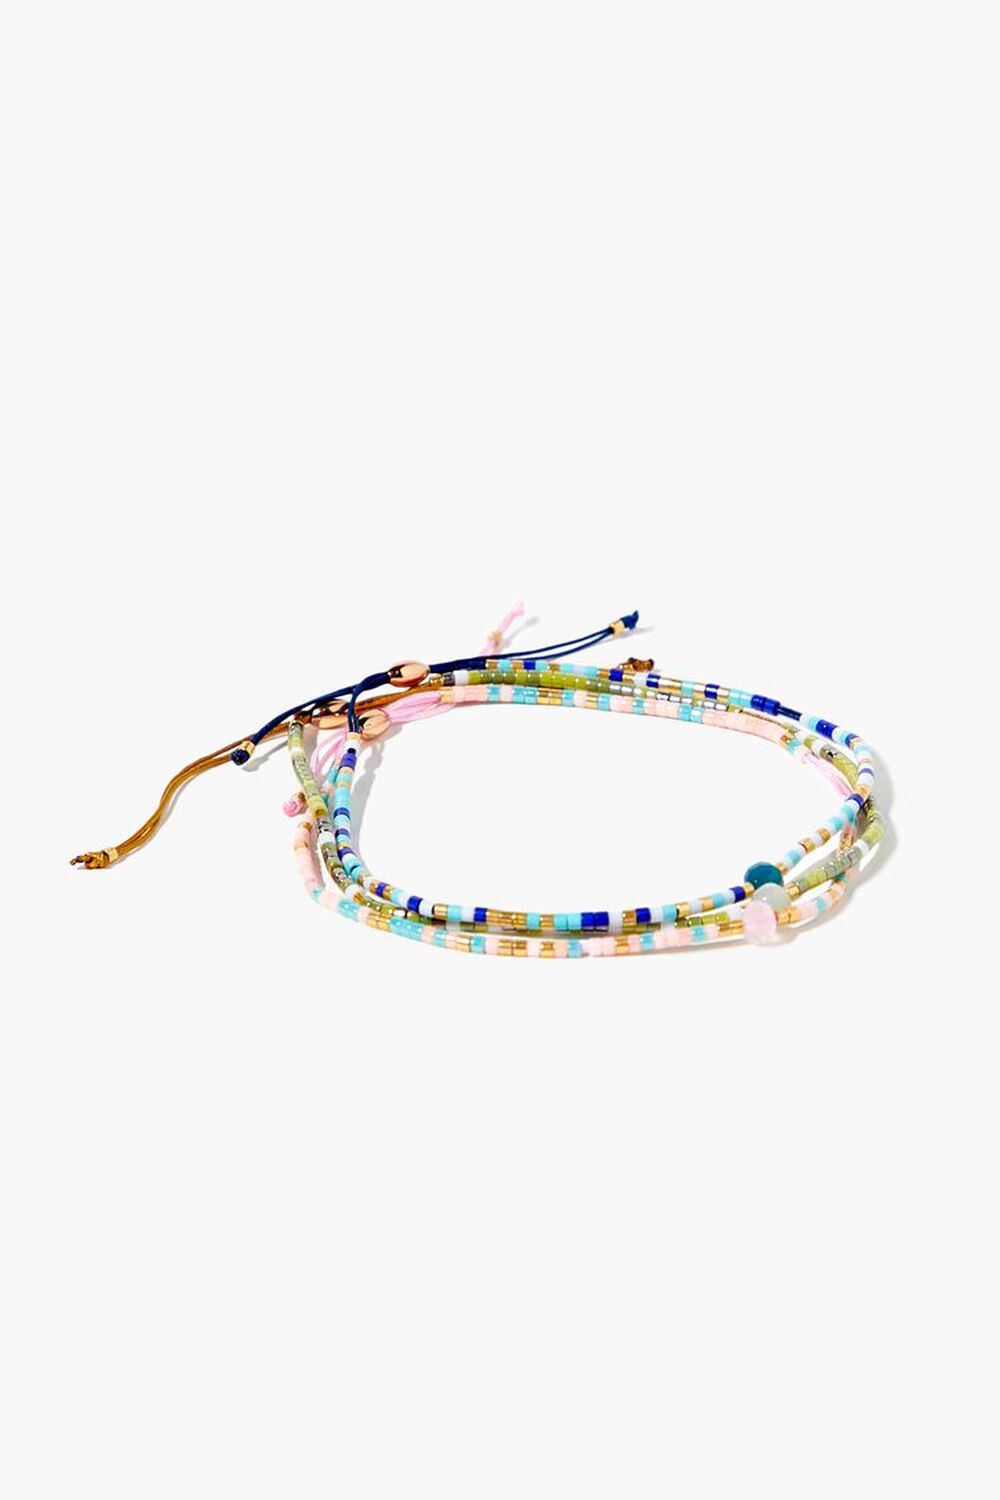 BLUE/MULTI Beaded Pull-Chain Bracelet Set, image 1